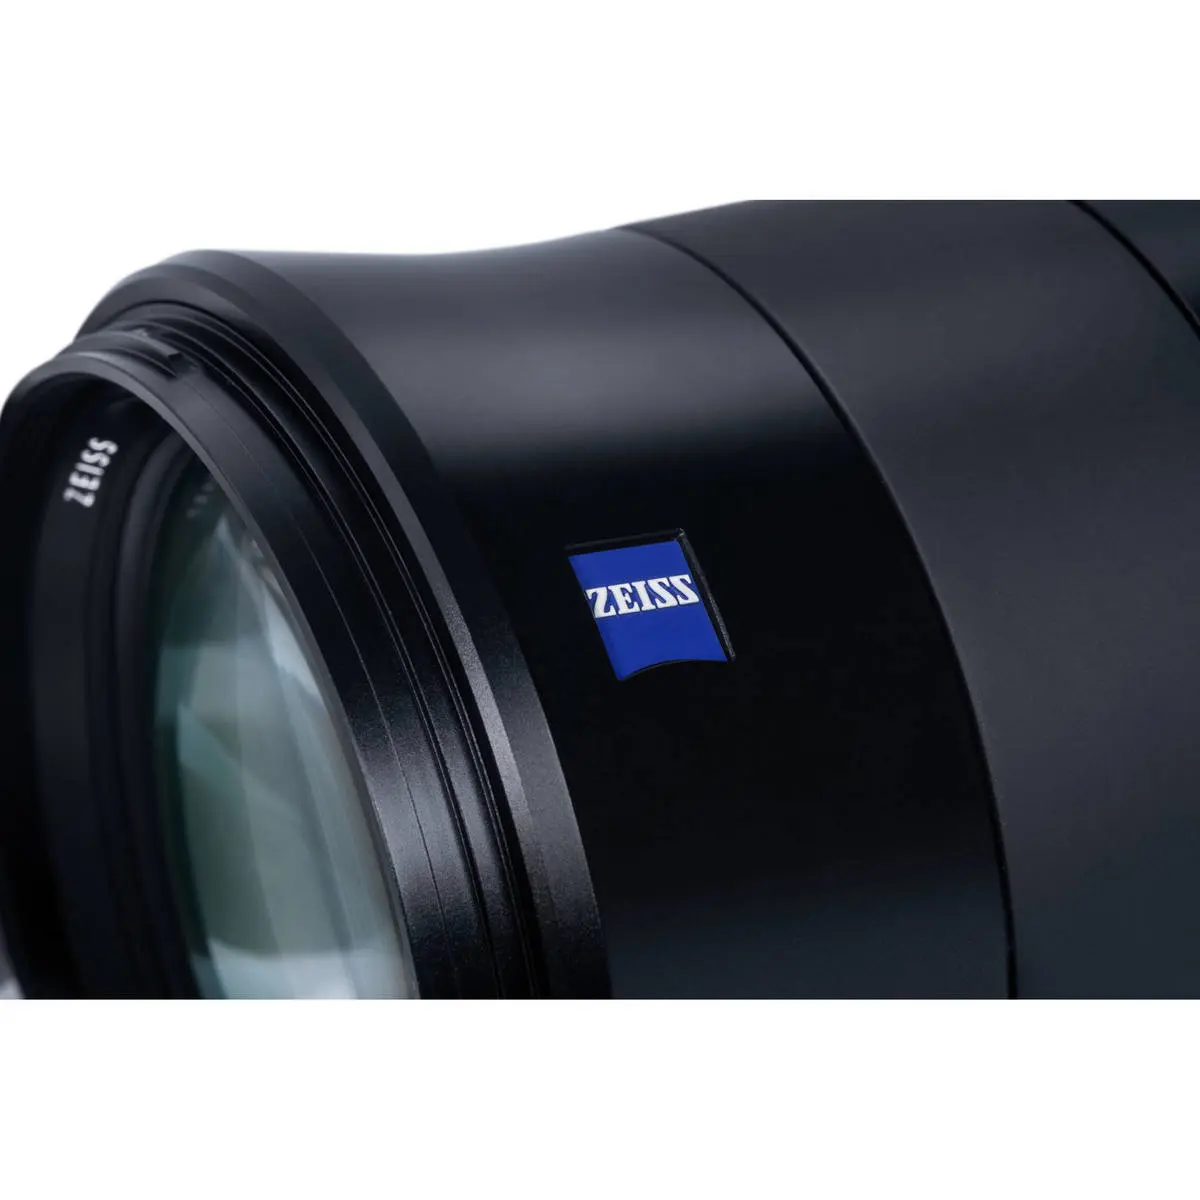 9. Carl Zeiss Otus 1.4/100 ZE (Canon) Lens